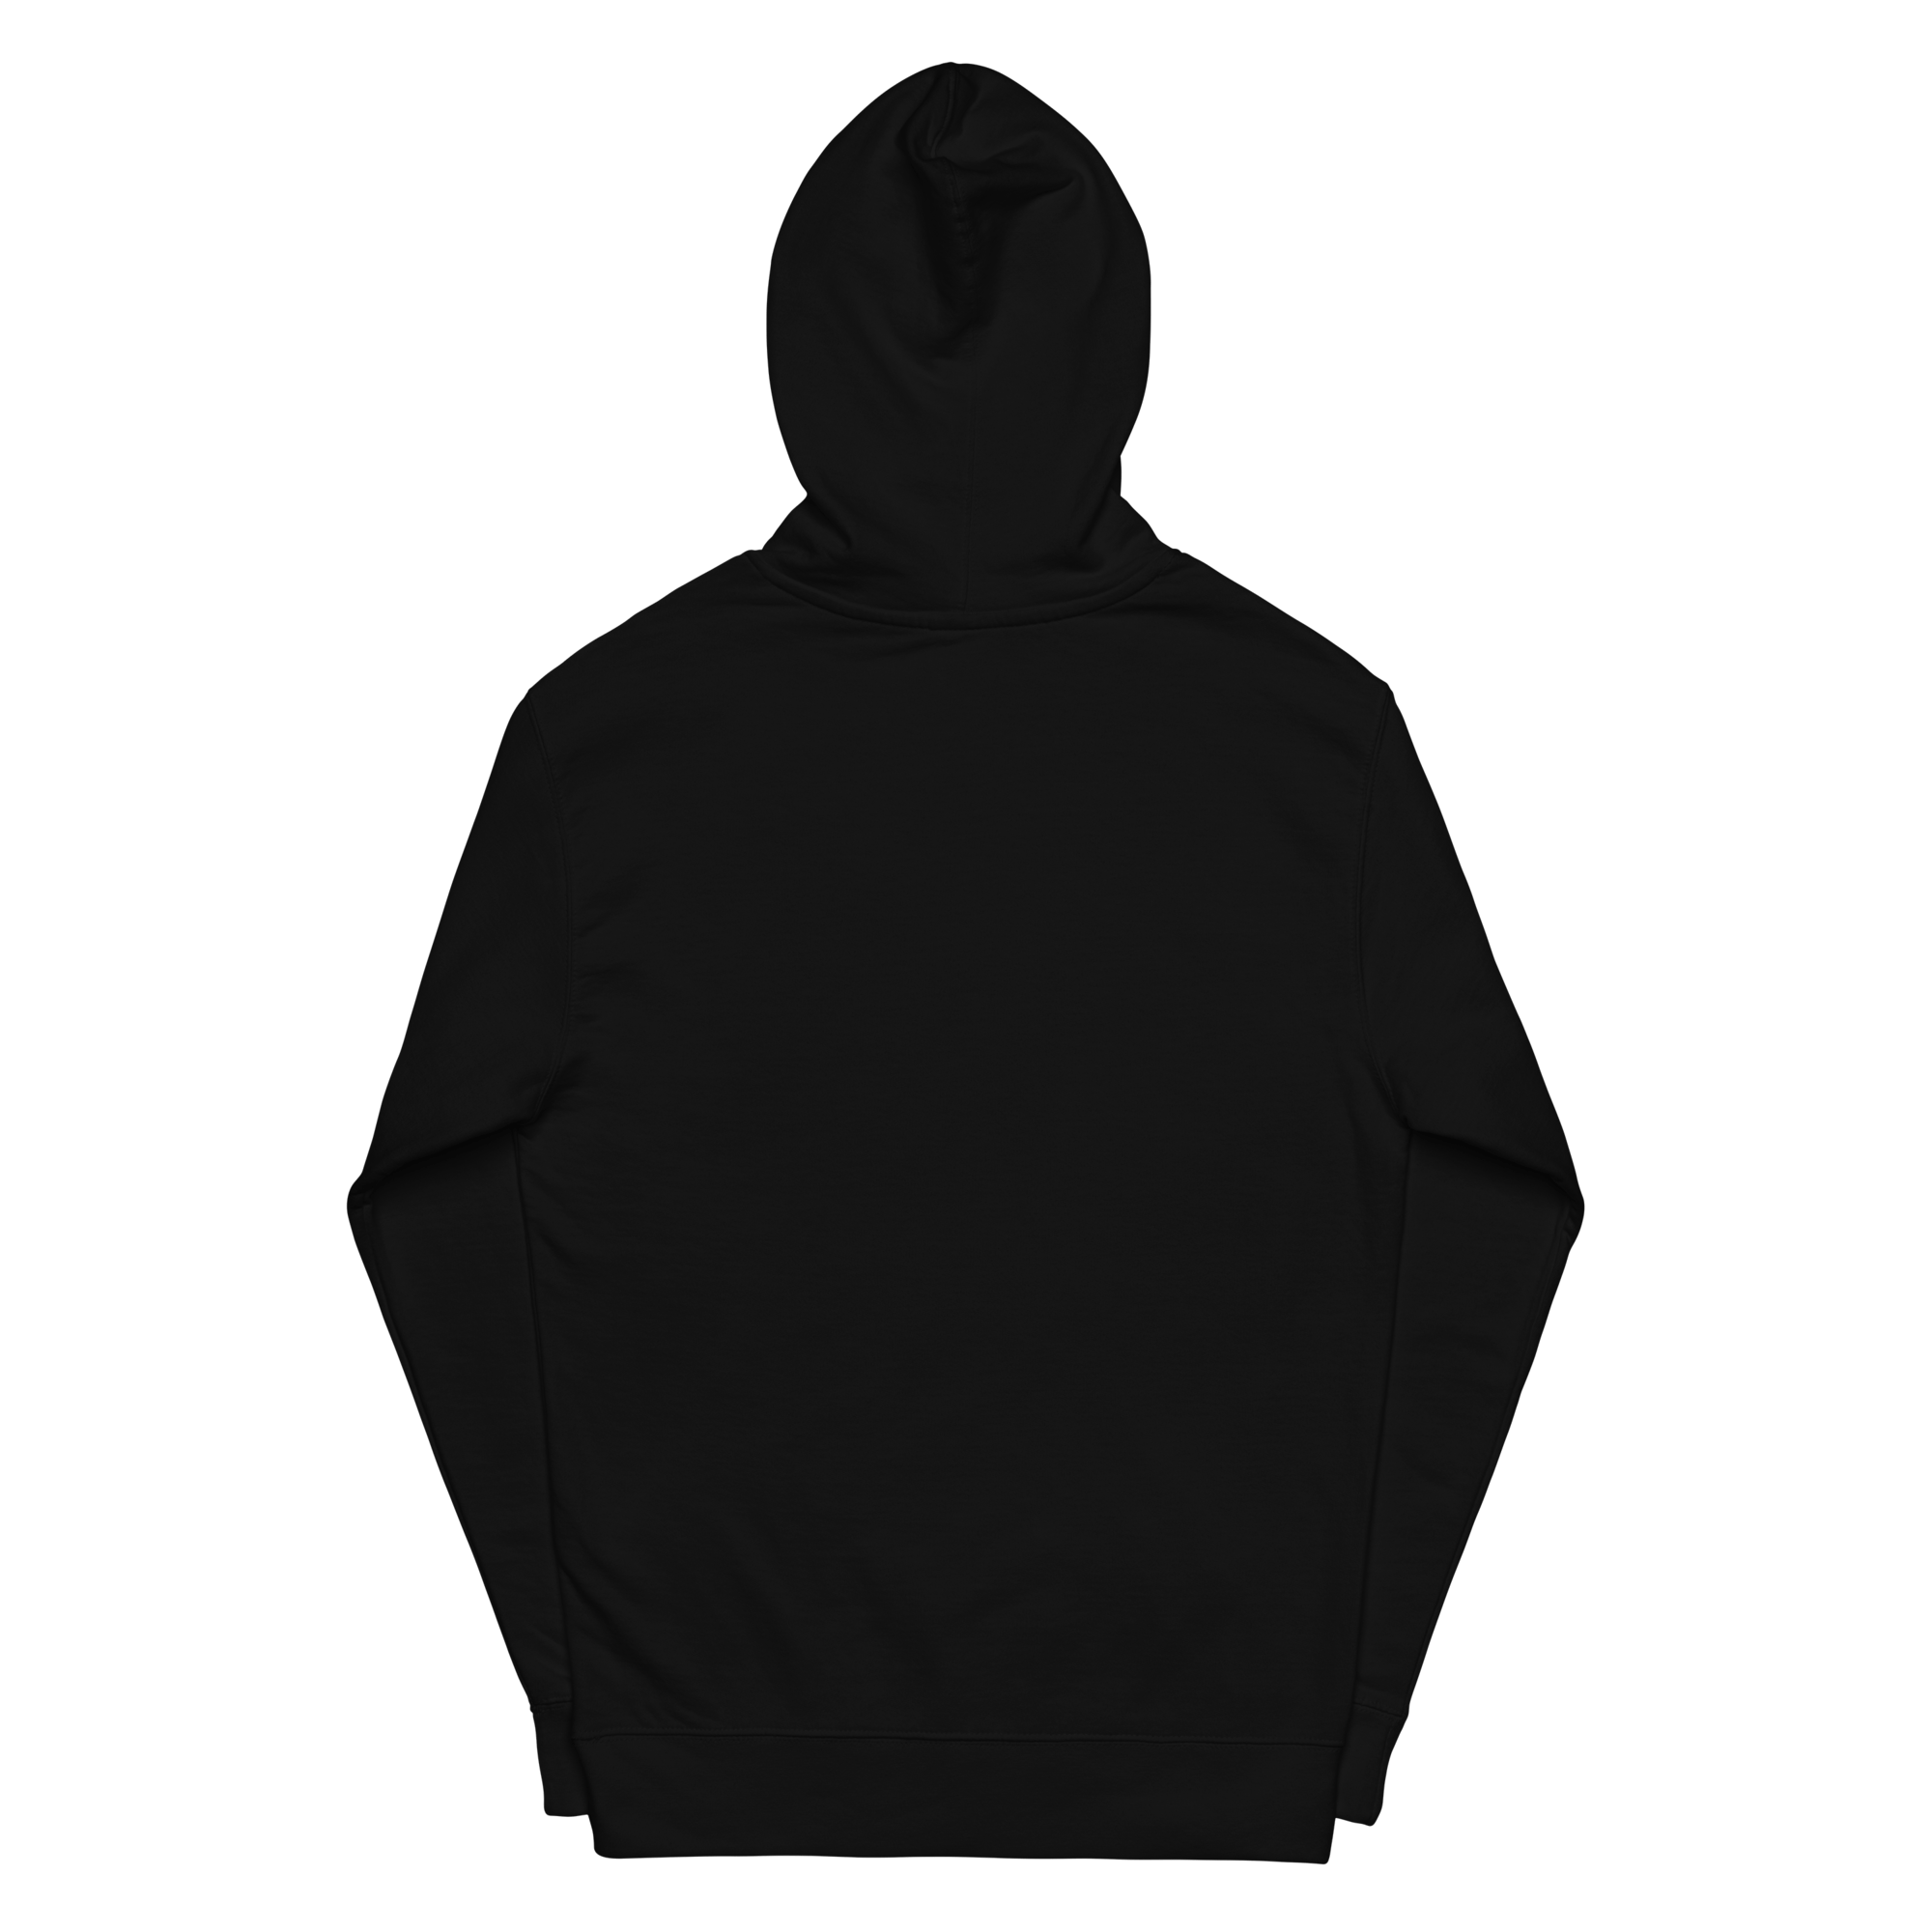 skyrofloors - Unisex midweight hoodie